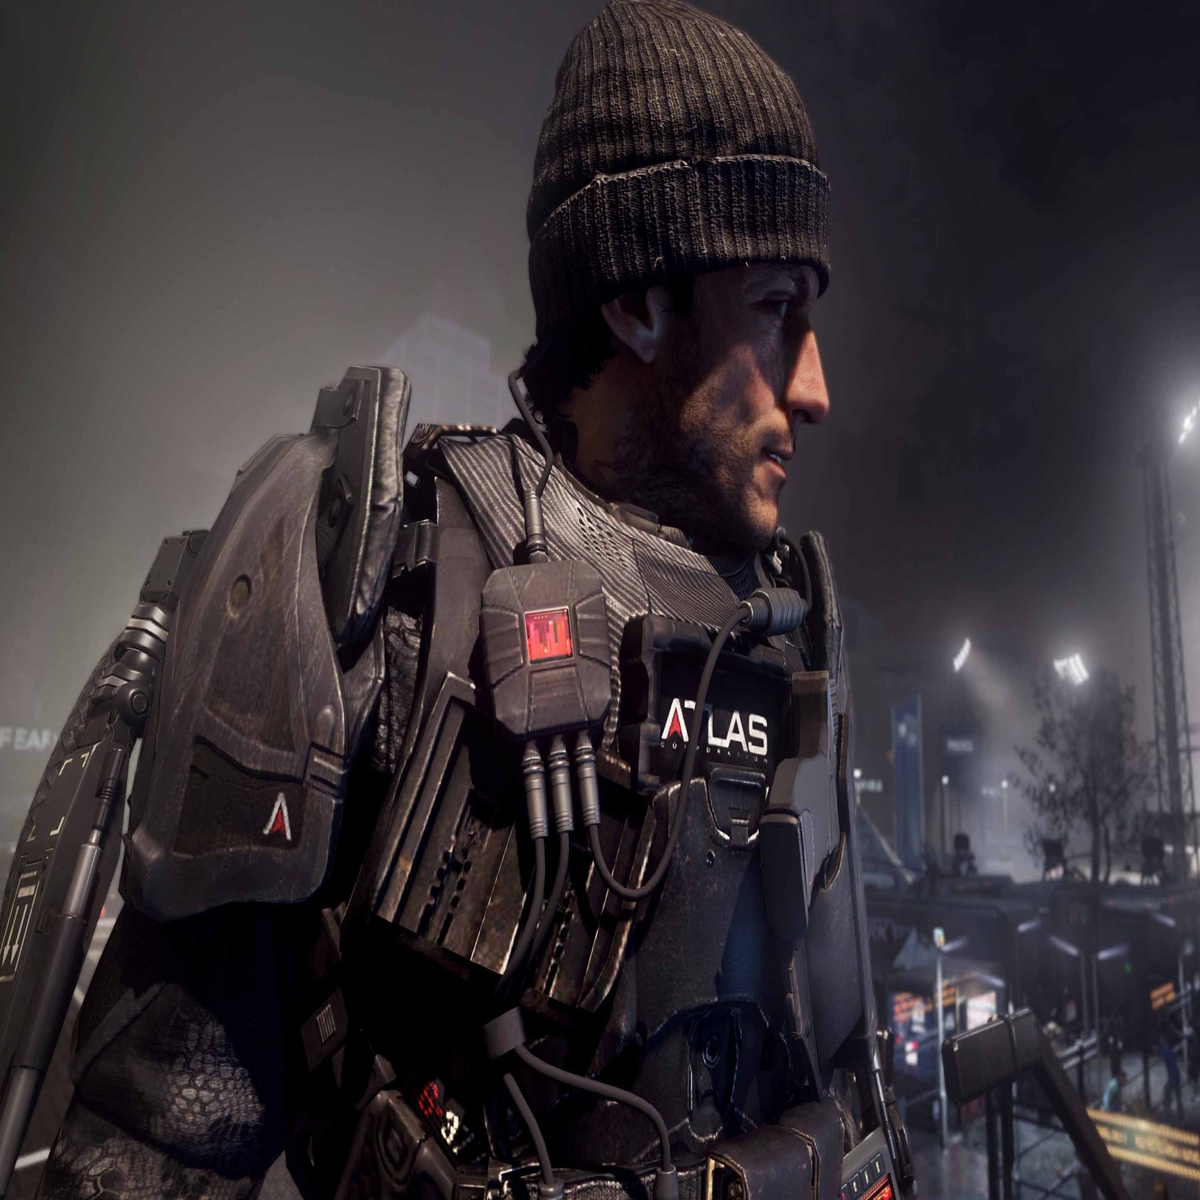 Call of Duty Advanced Warfare: como mudar o visual, com roupas e